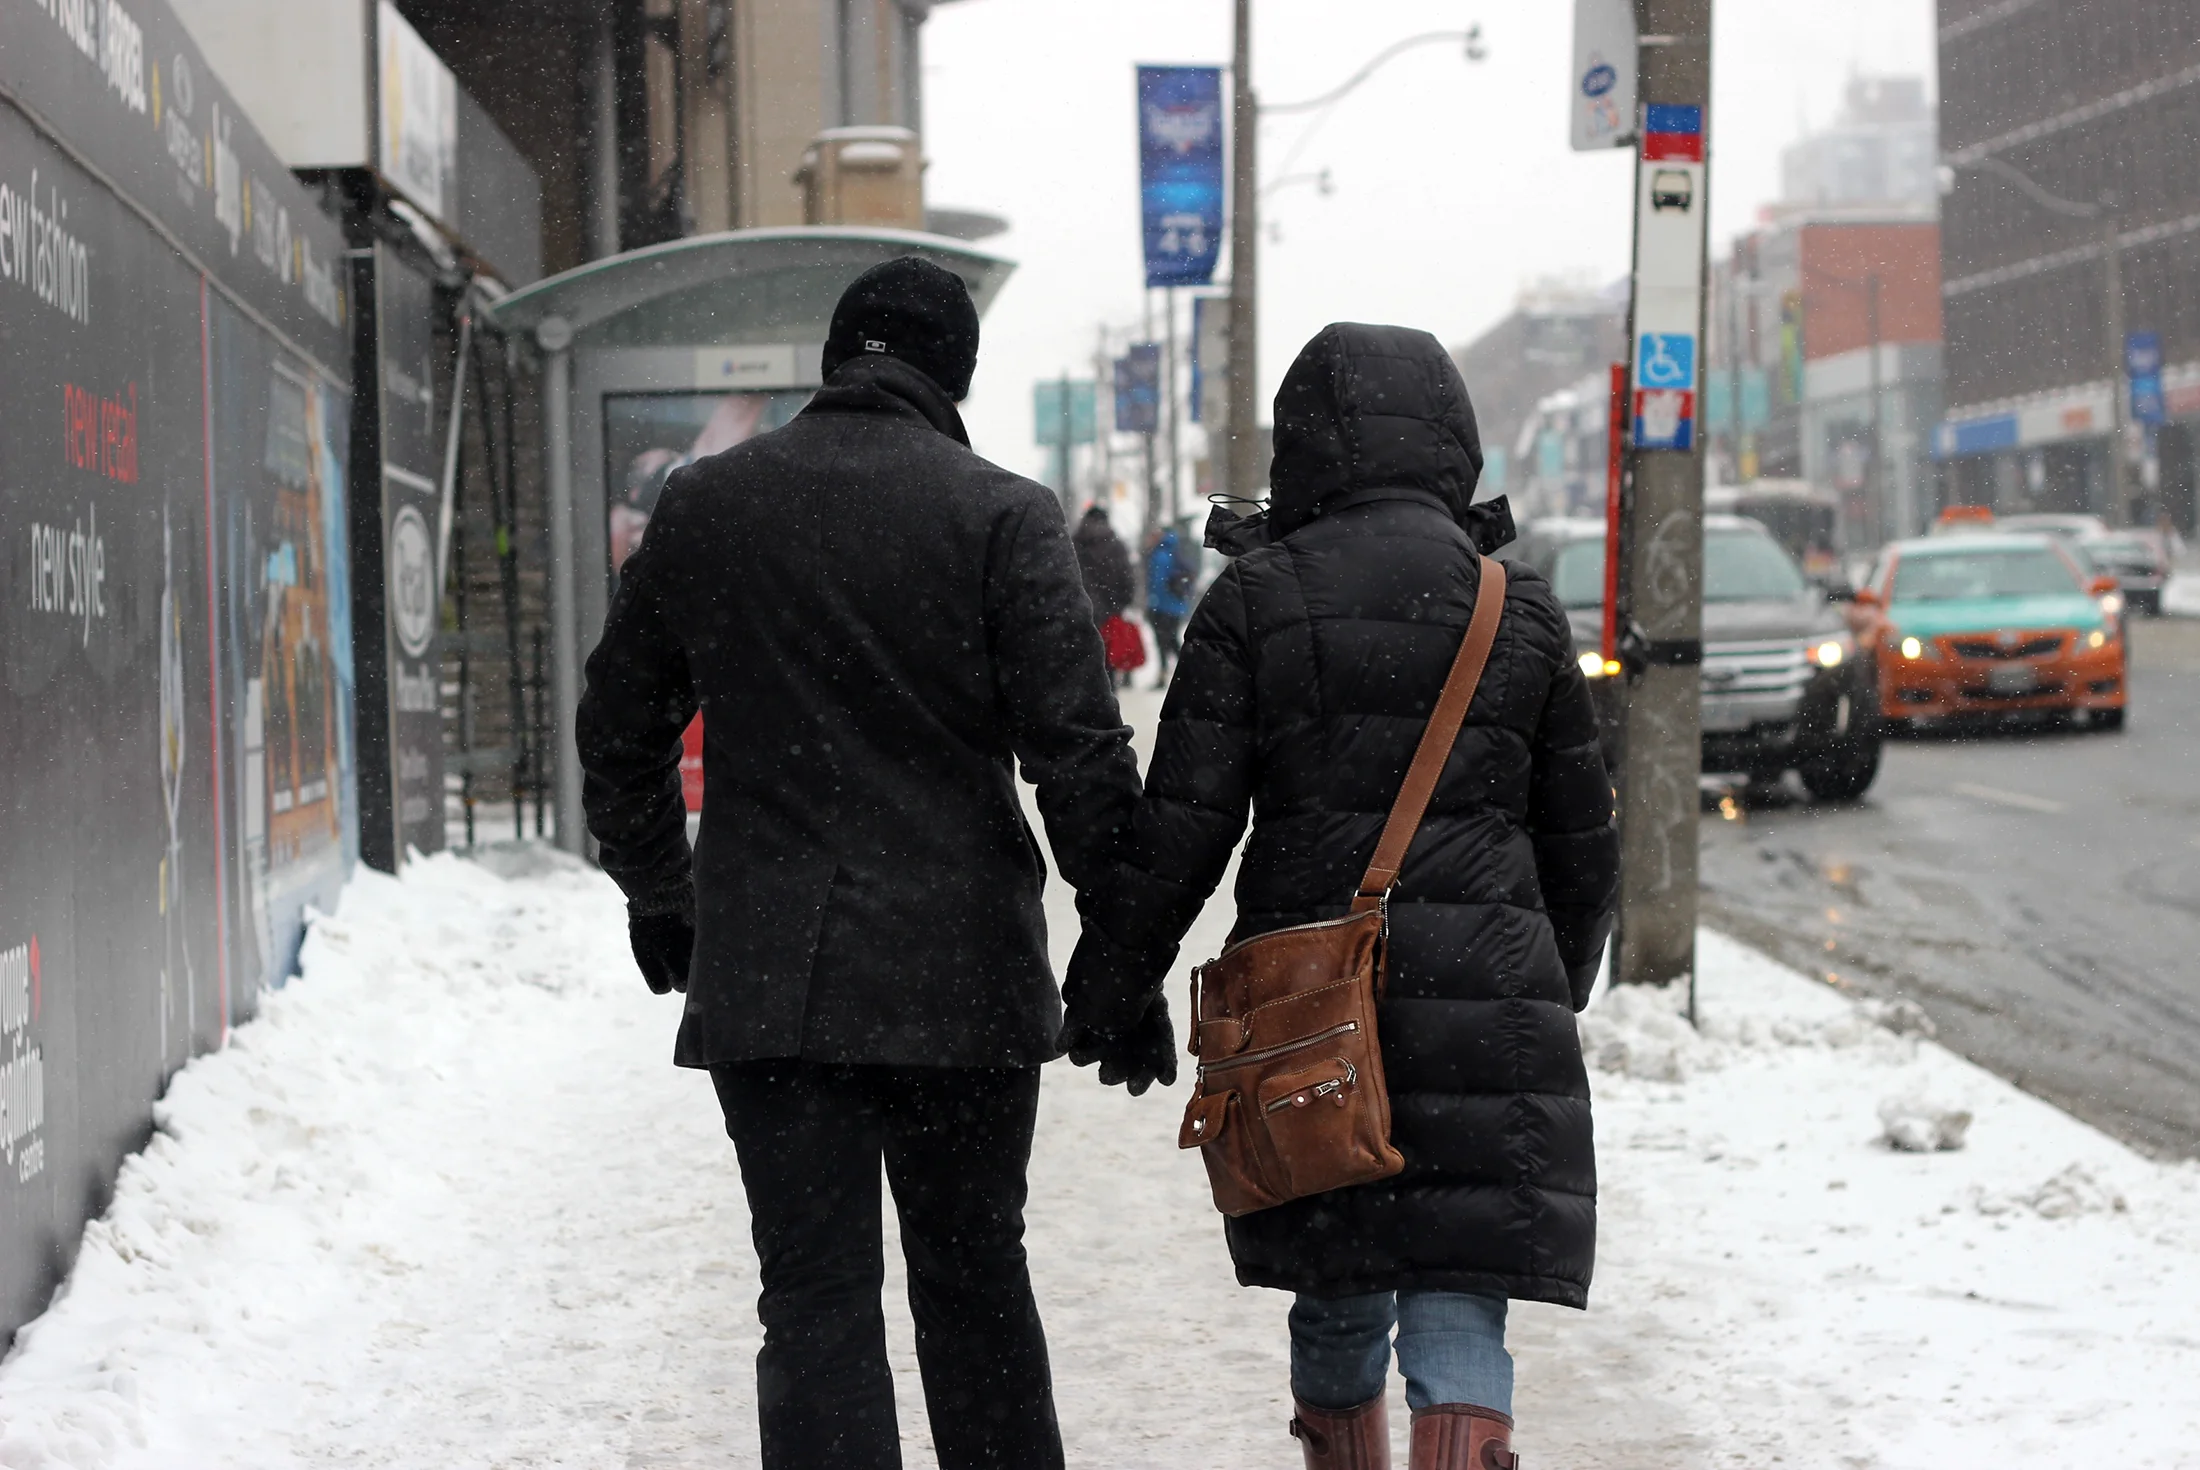 Pedestrians on snowy street